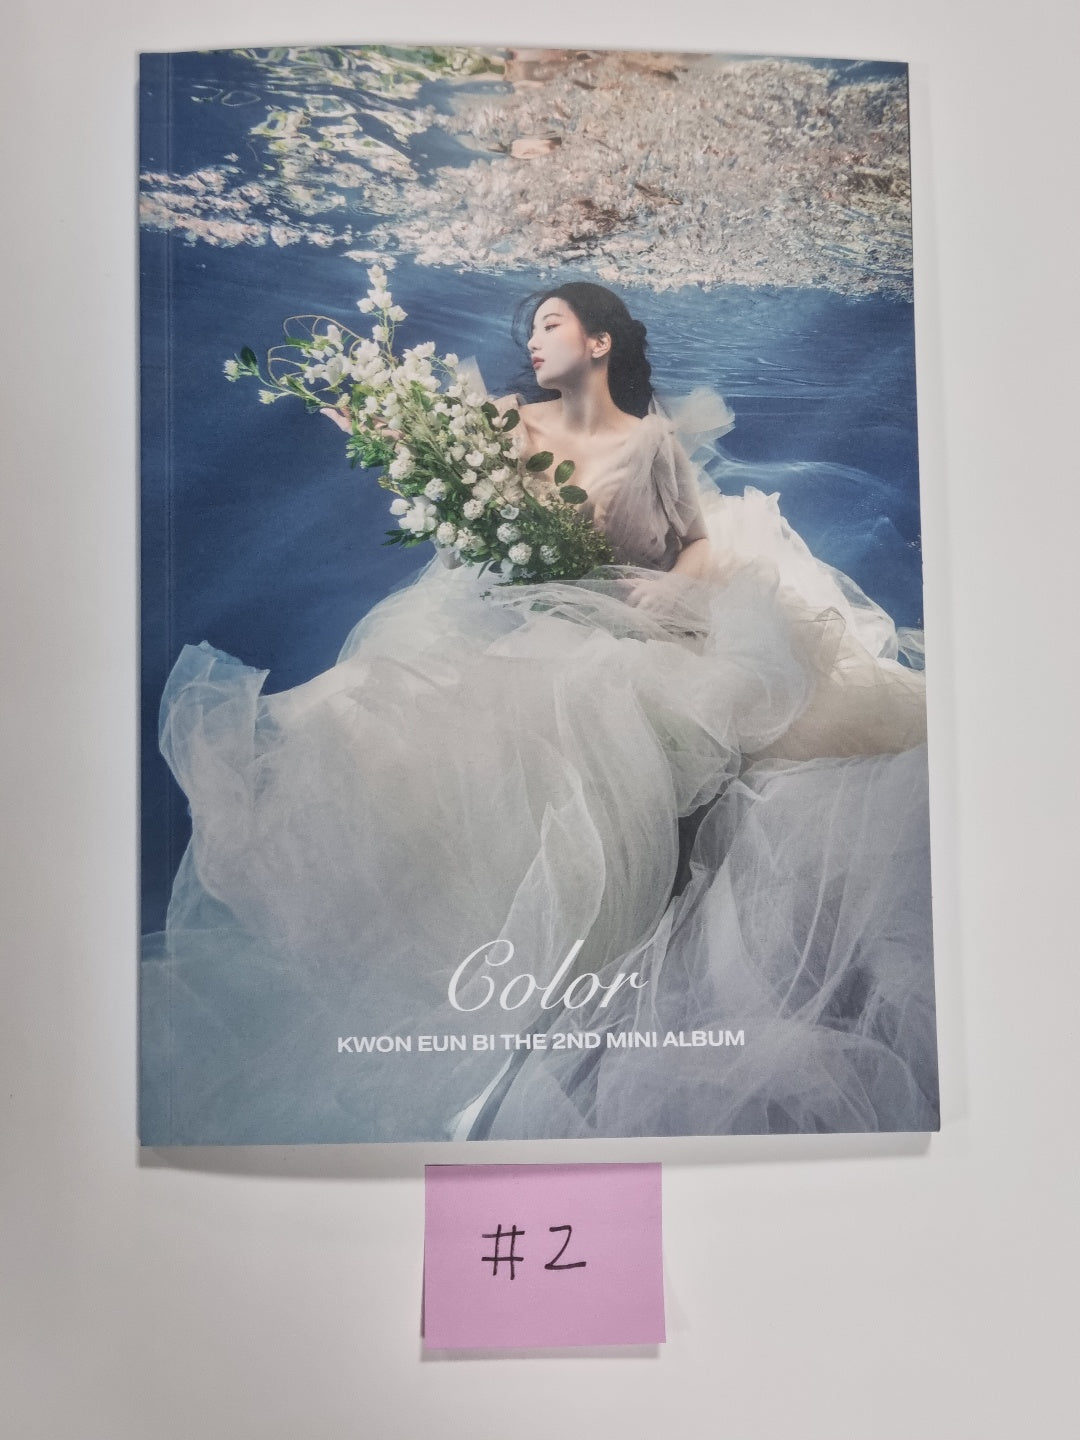 Kwon Eunbi "Color" - Hand Autographed(Signed) Album